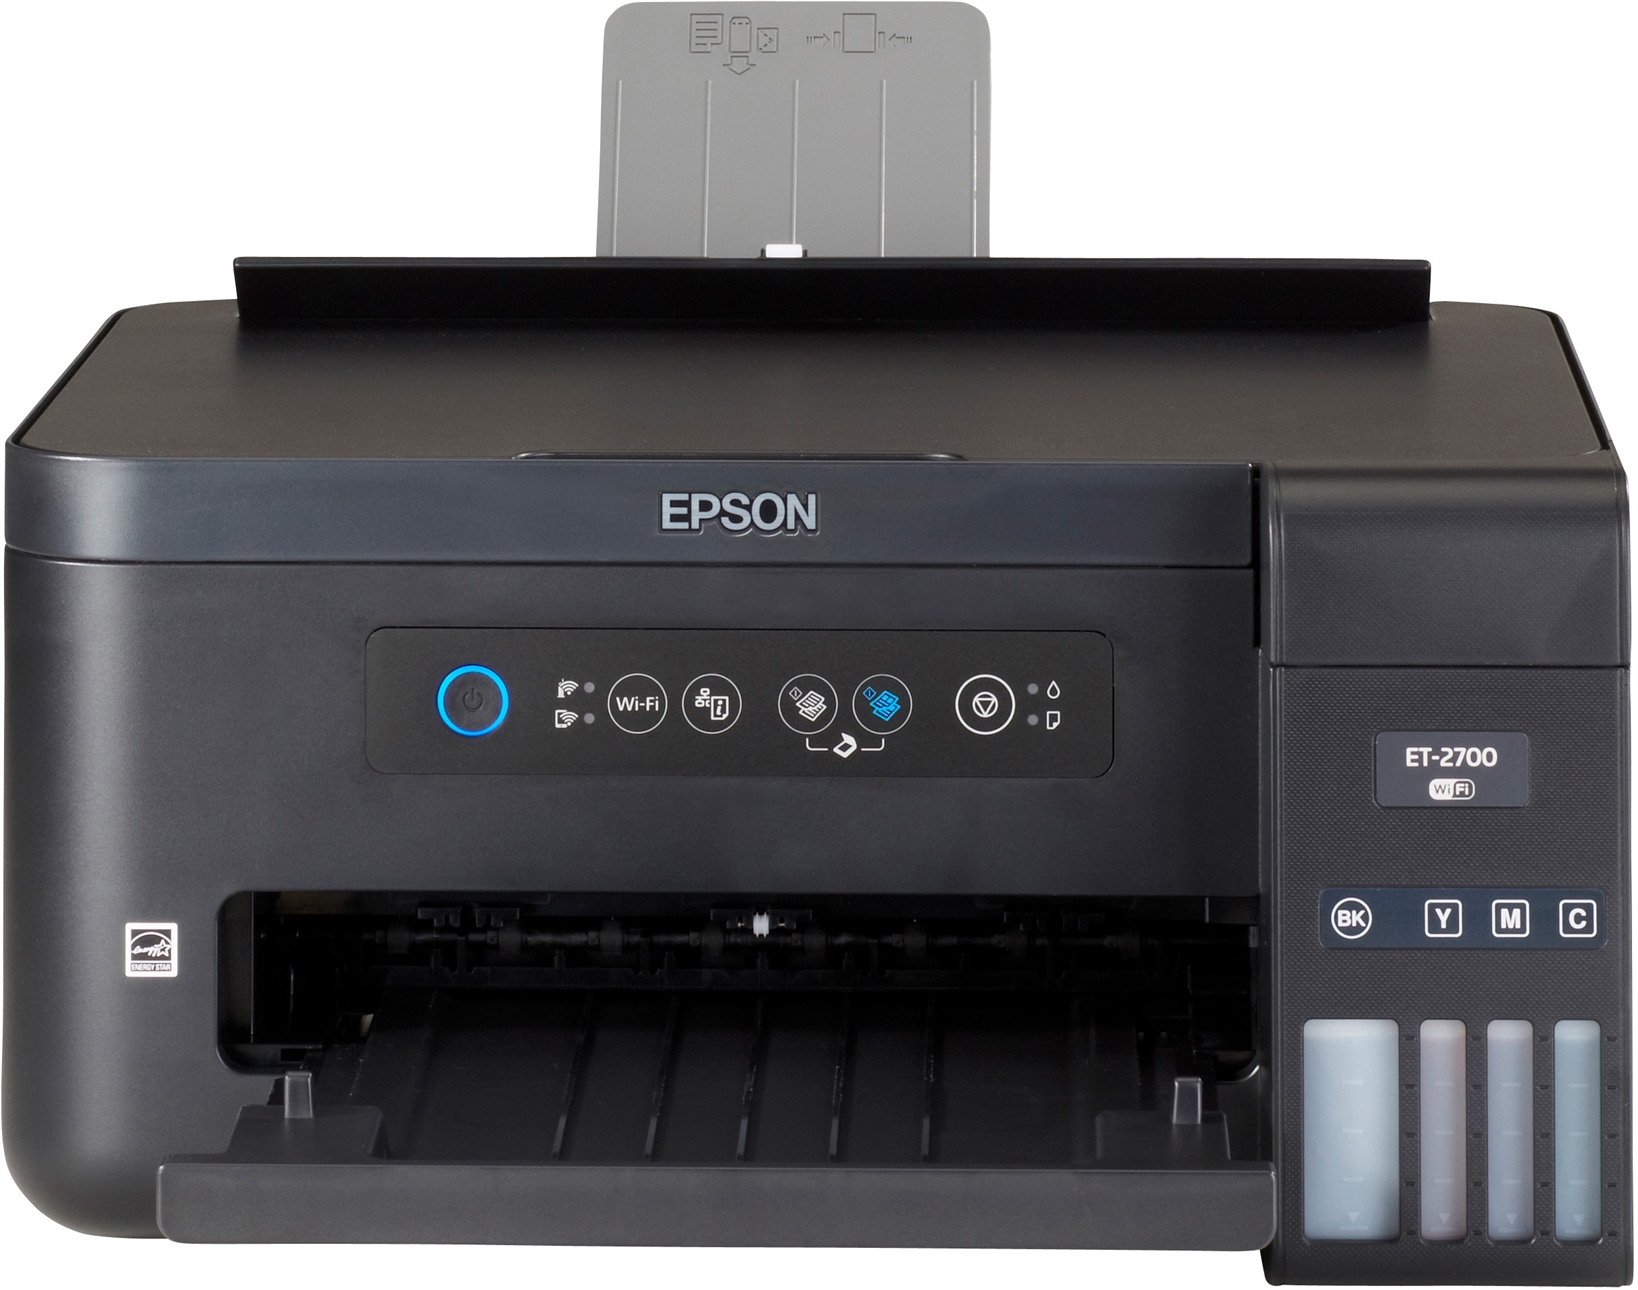 Impresora Epson Ecotank Et 2700 Opiniones Y Precios Ocu 7705